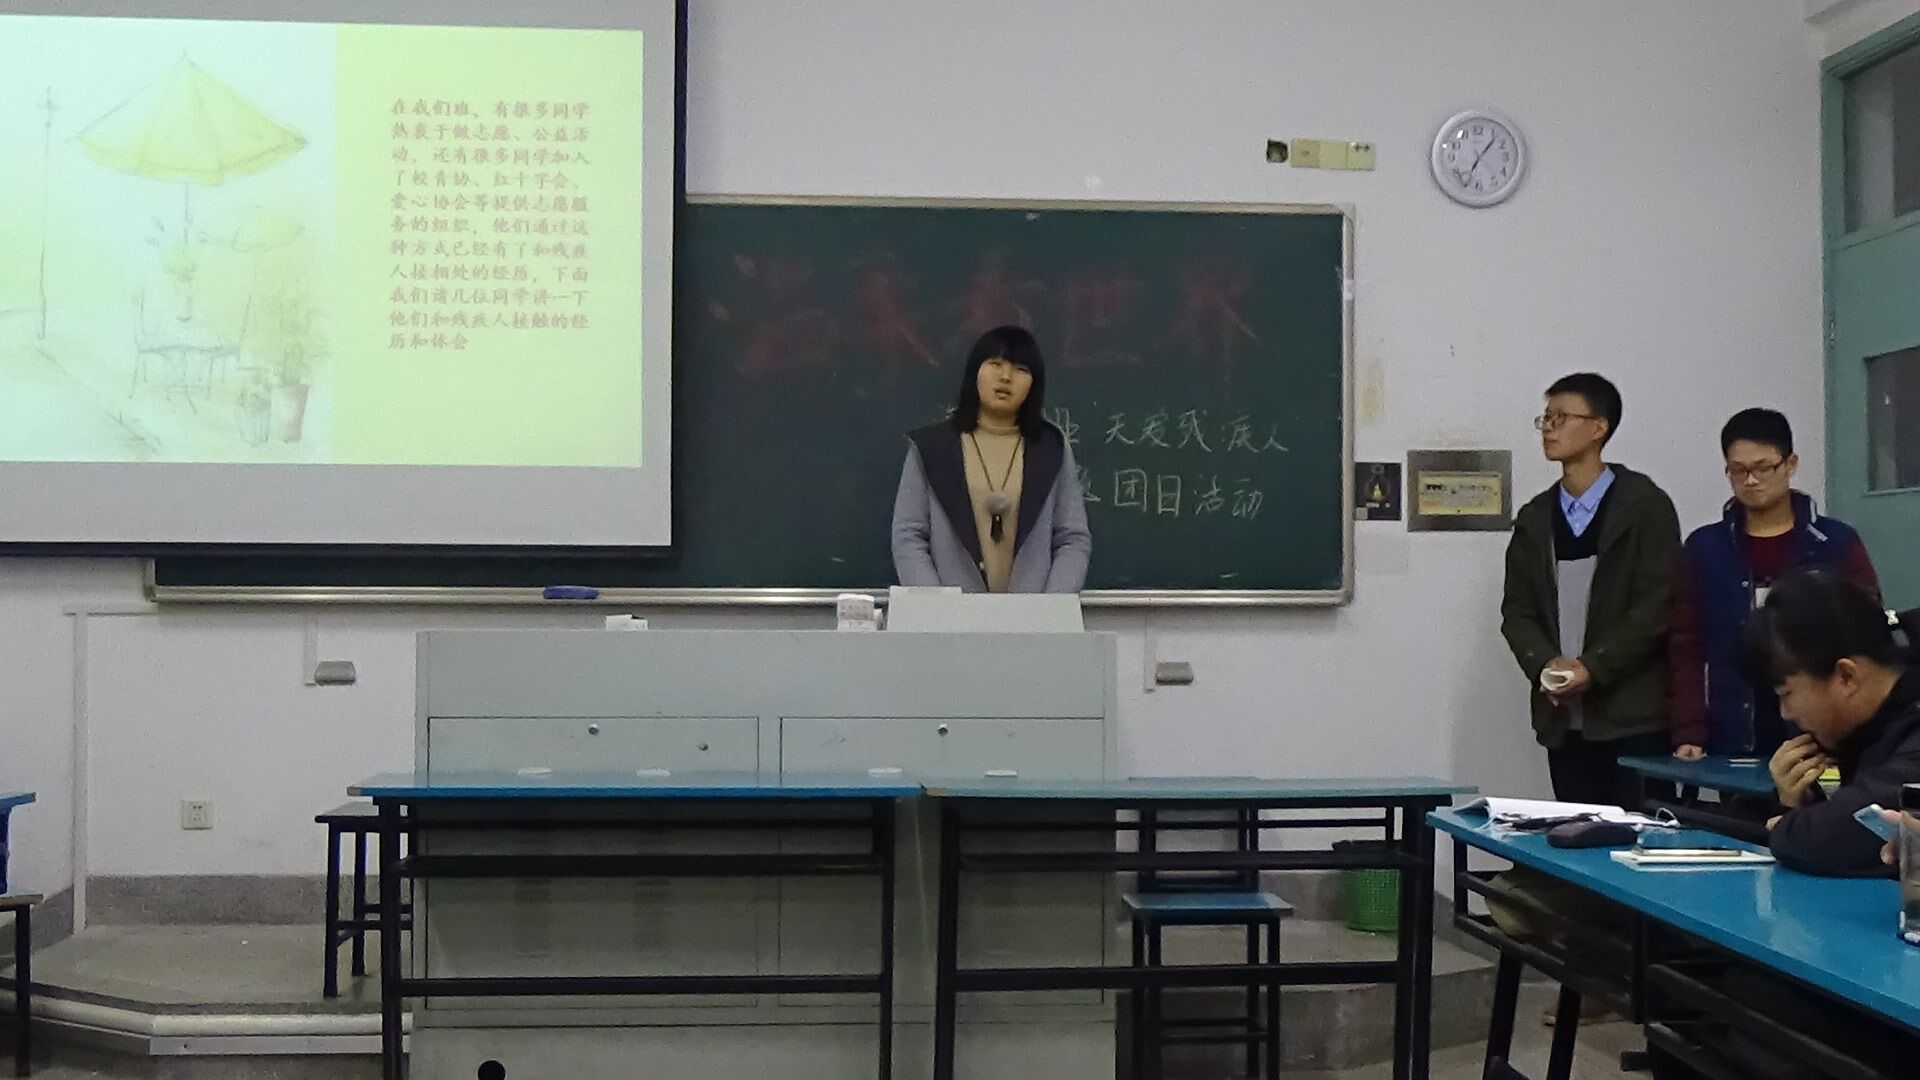 赵明宇同学在讲述为残障人士提供志愿服务的经历